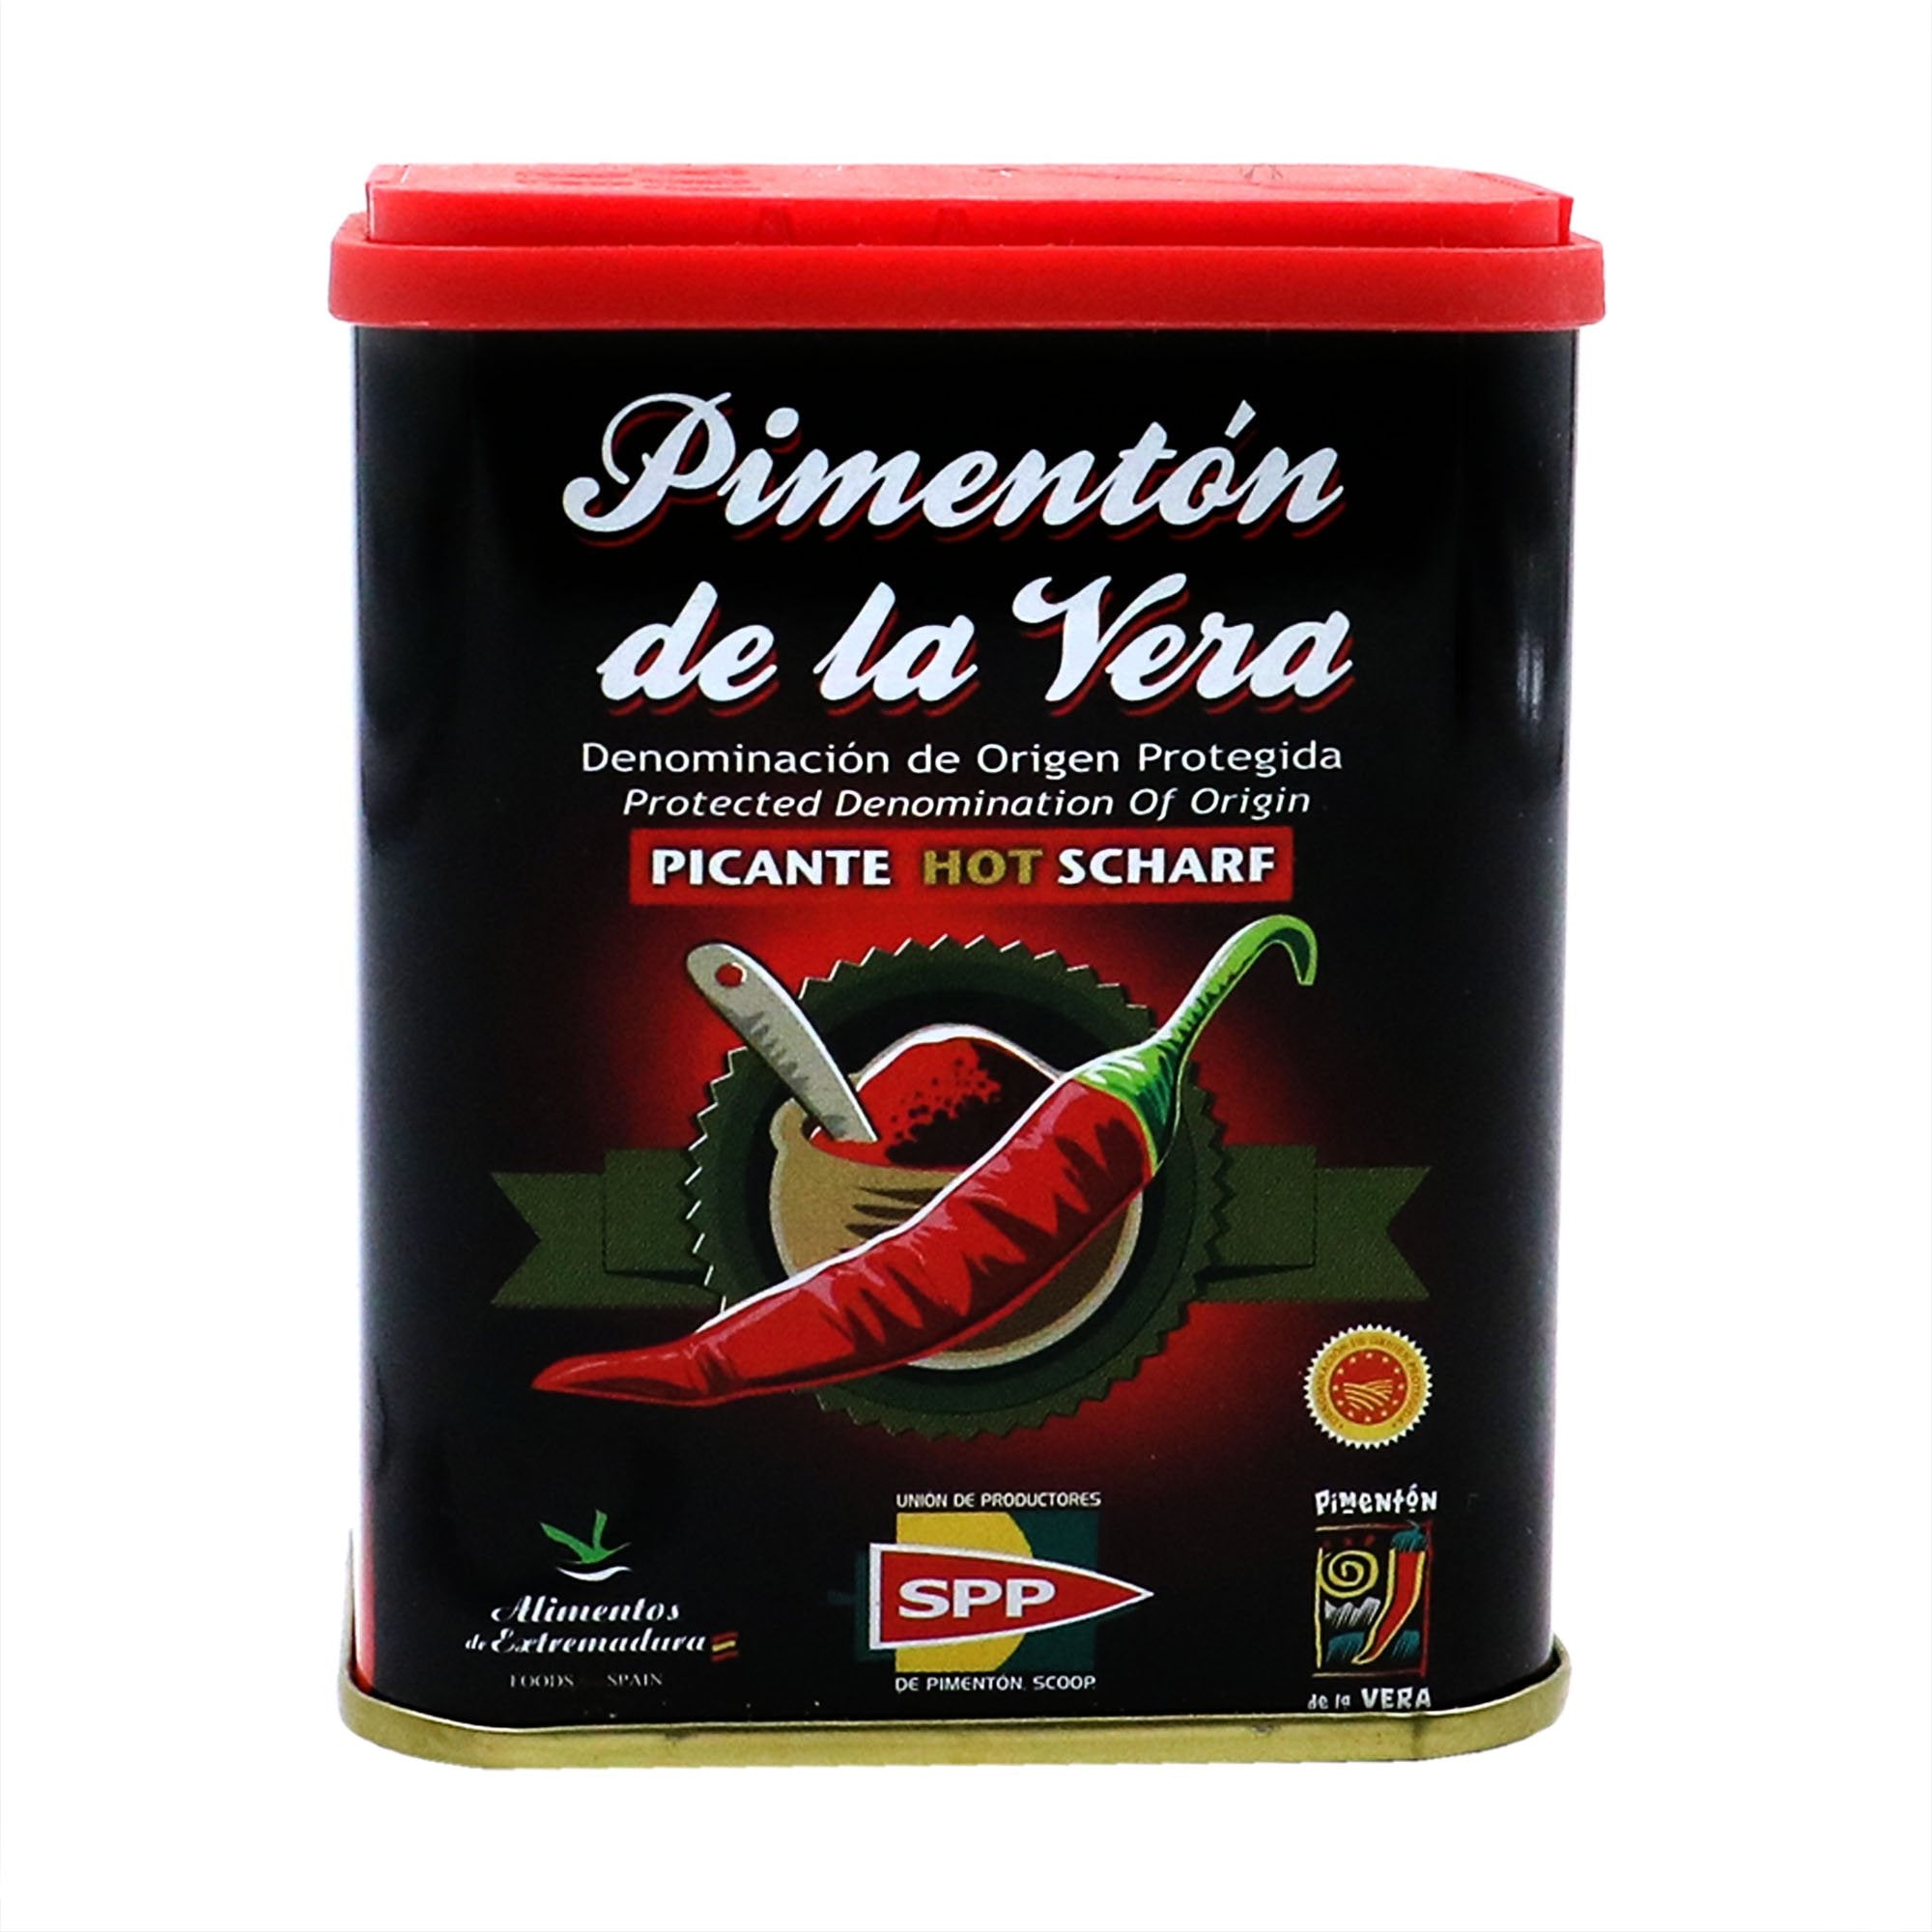 Pimenton de la Vera - Traditional Spanish sweet paprika - Santo Domingo